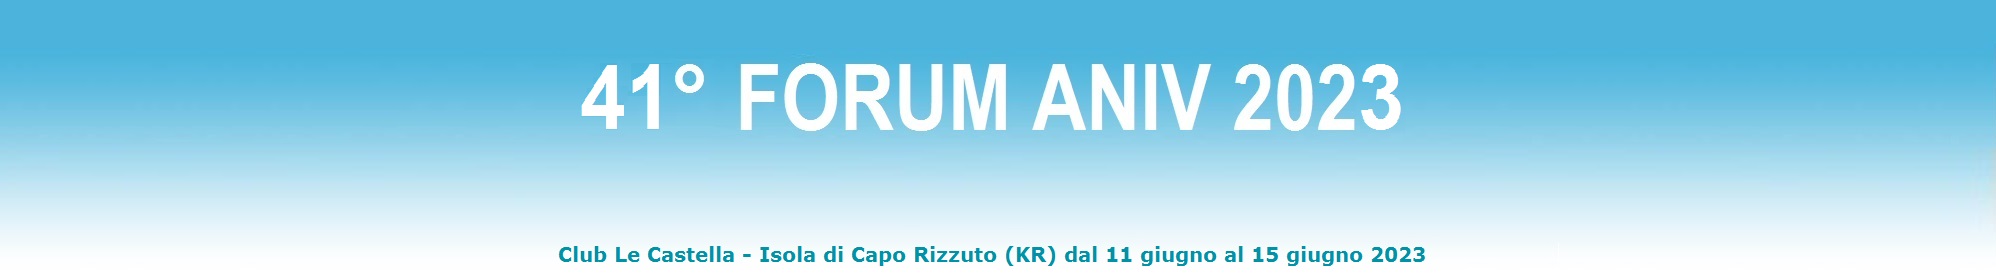 banner forum 2021